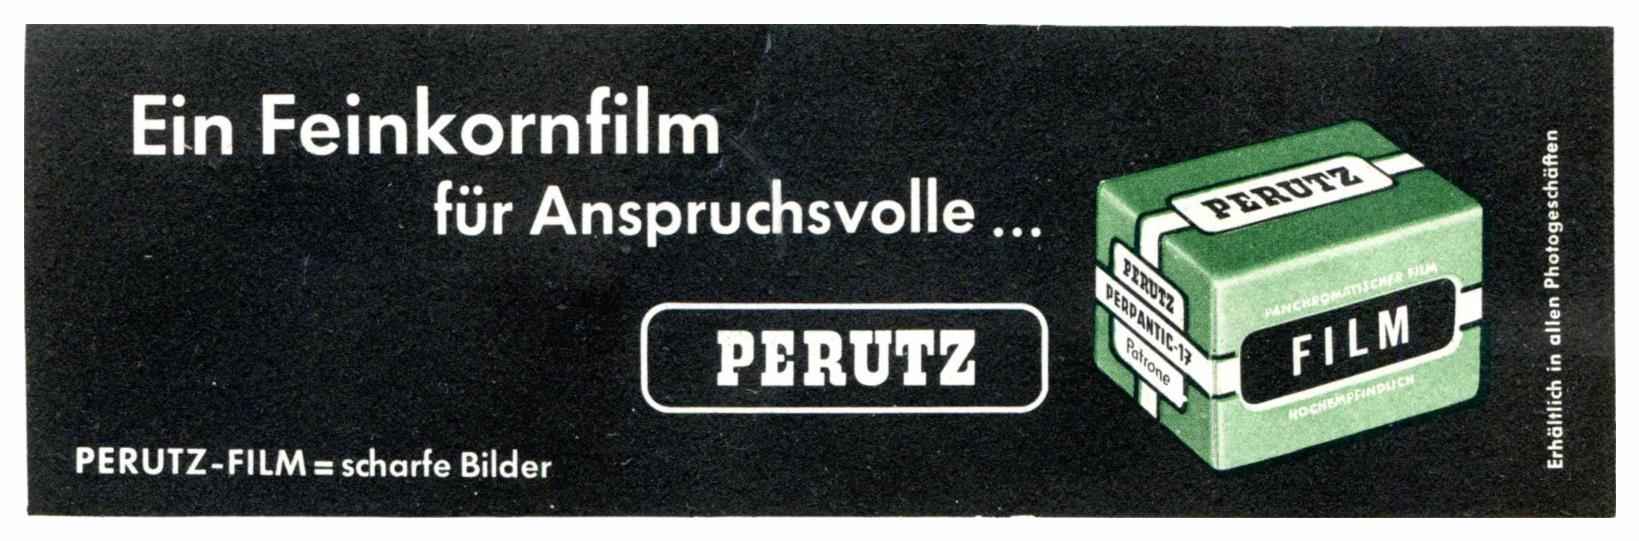 Perutz 1958 0.jpg